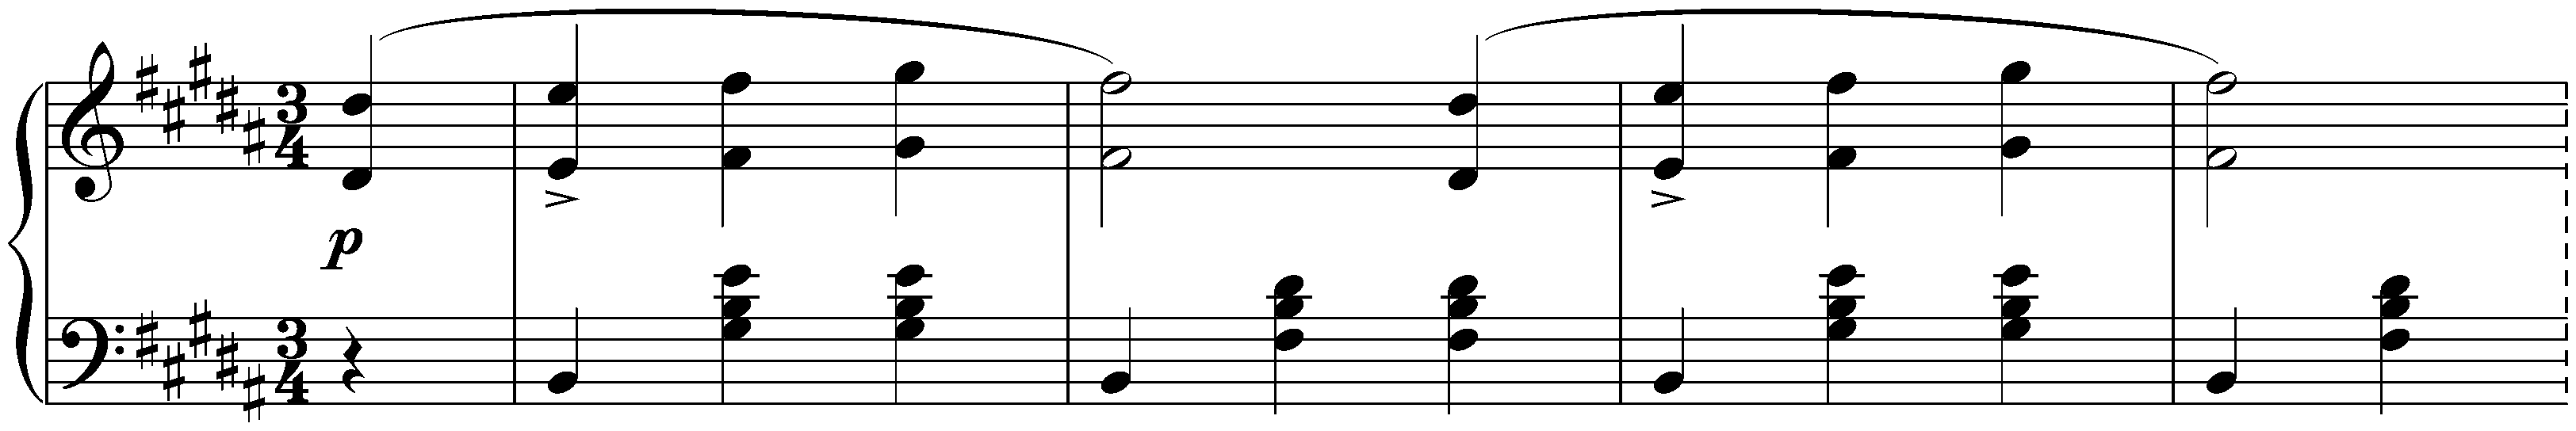 Twelve Waltzes, seventeen Ländler and nine Ecossaises, D 145; 11. Twelve Waltzes, no. 11 in B major